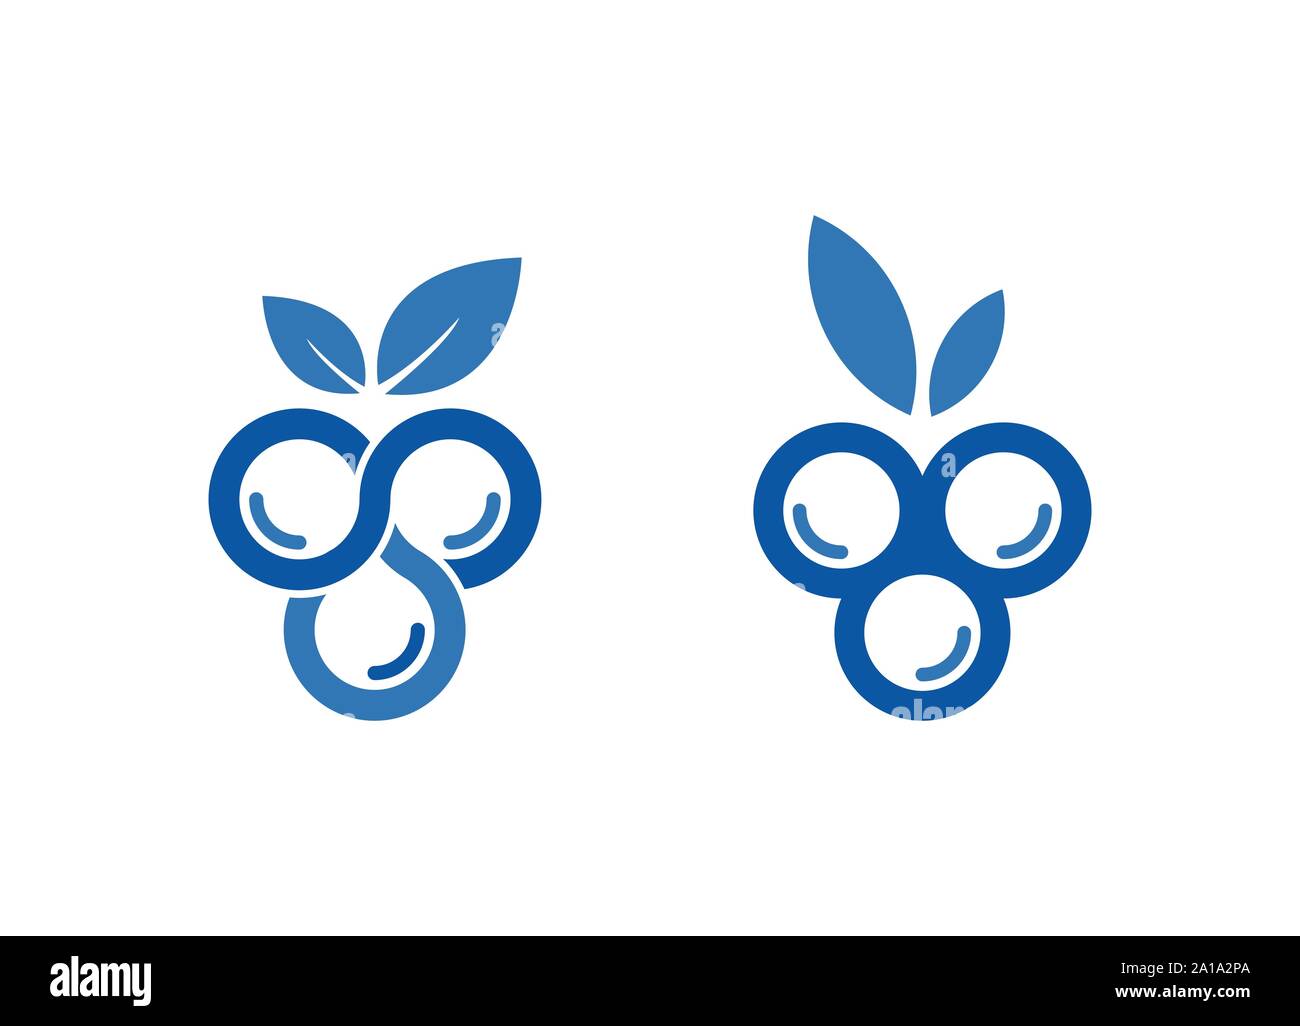 Mirtillo logo design template, mirtillo logo, immagini Stock Foto & vettori, mirtillo Logo design Illustrazione Vettoriale